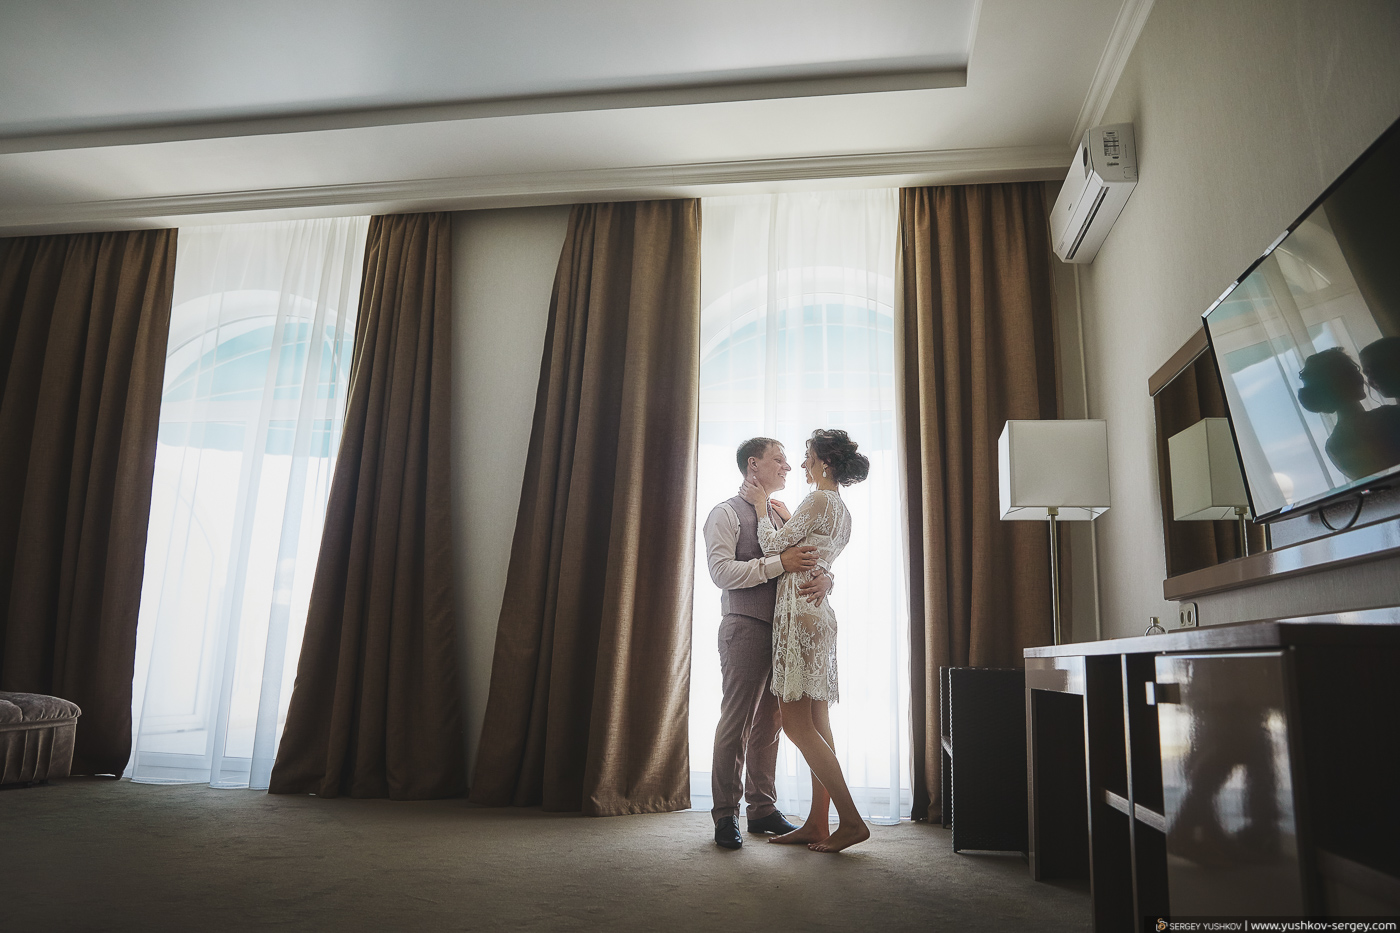 Утро невесты в отеле у моря. Севастополь. Фотограф - Сергей Юшков.